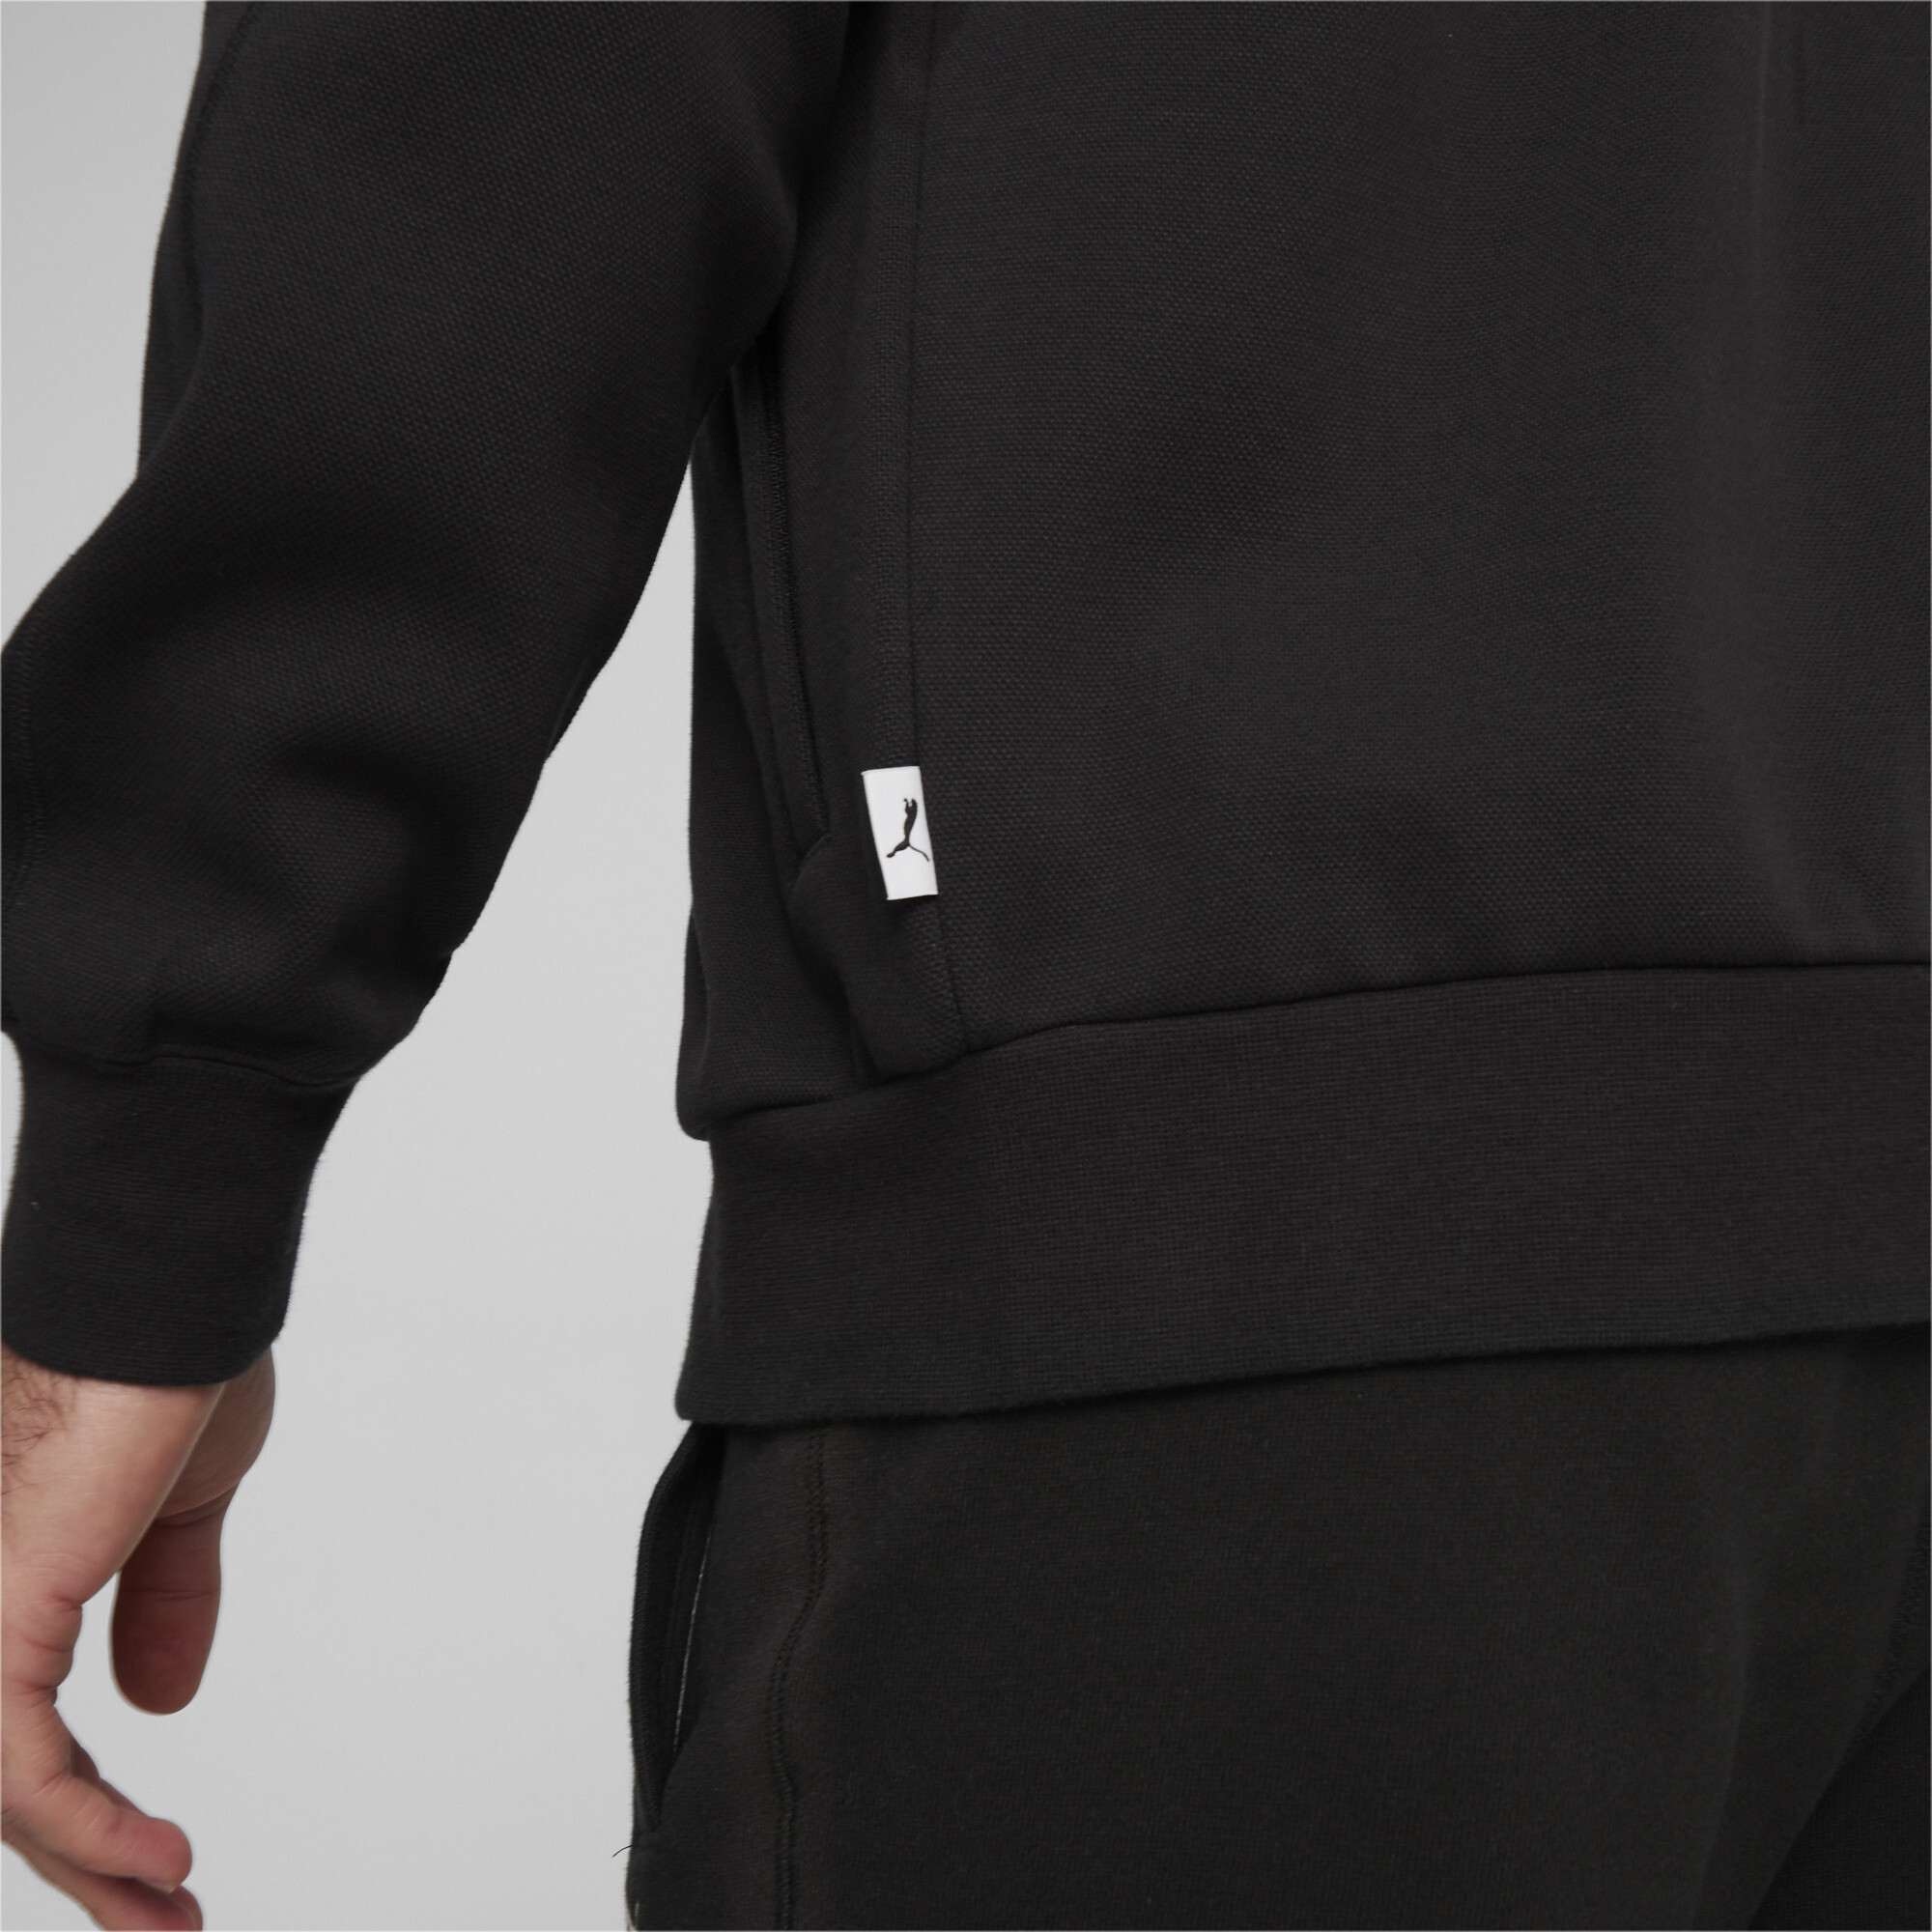 Men's PUMA MMQ T7 Track Jacket In Black, Size 2XL